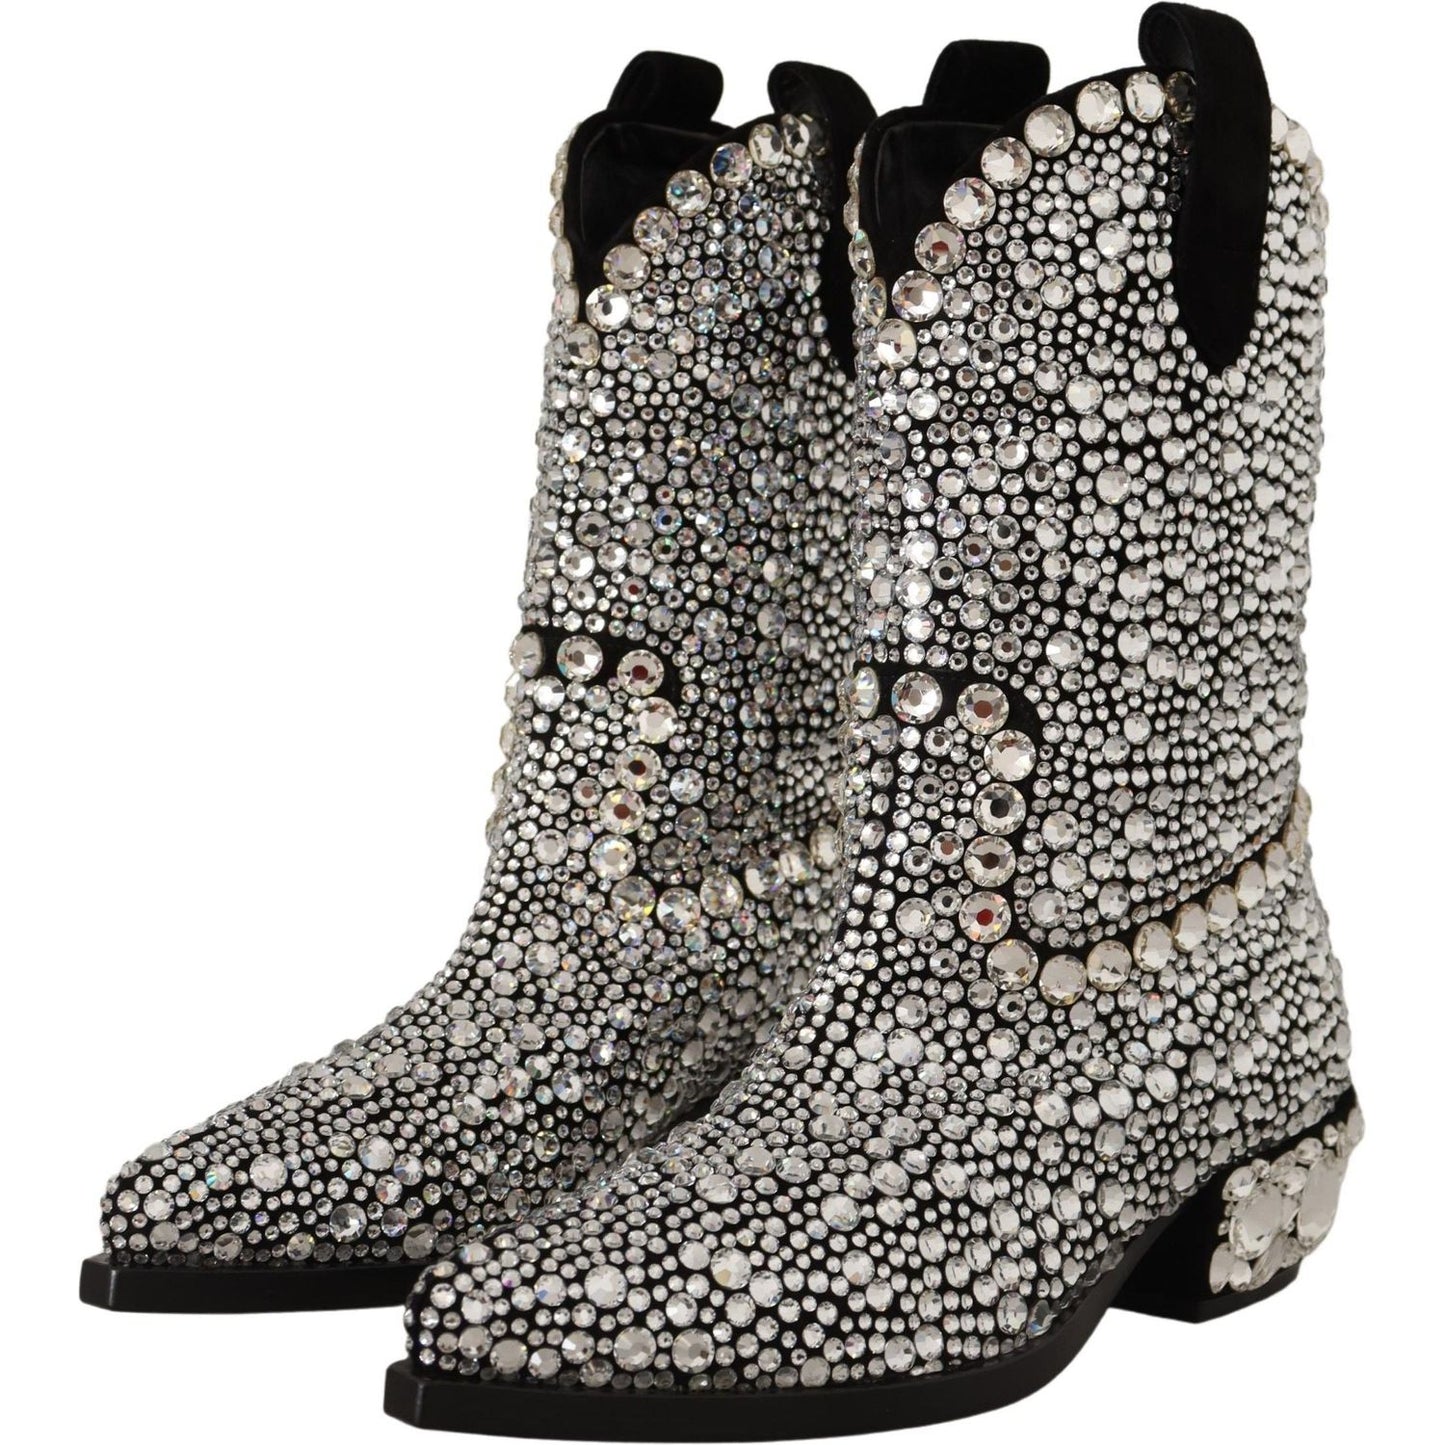 Dolce & Gabbana Crystal-Embellished Black Suede Boots black-suede-strass-crystal-cowgirl-boots